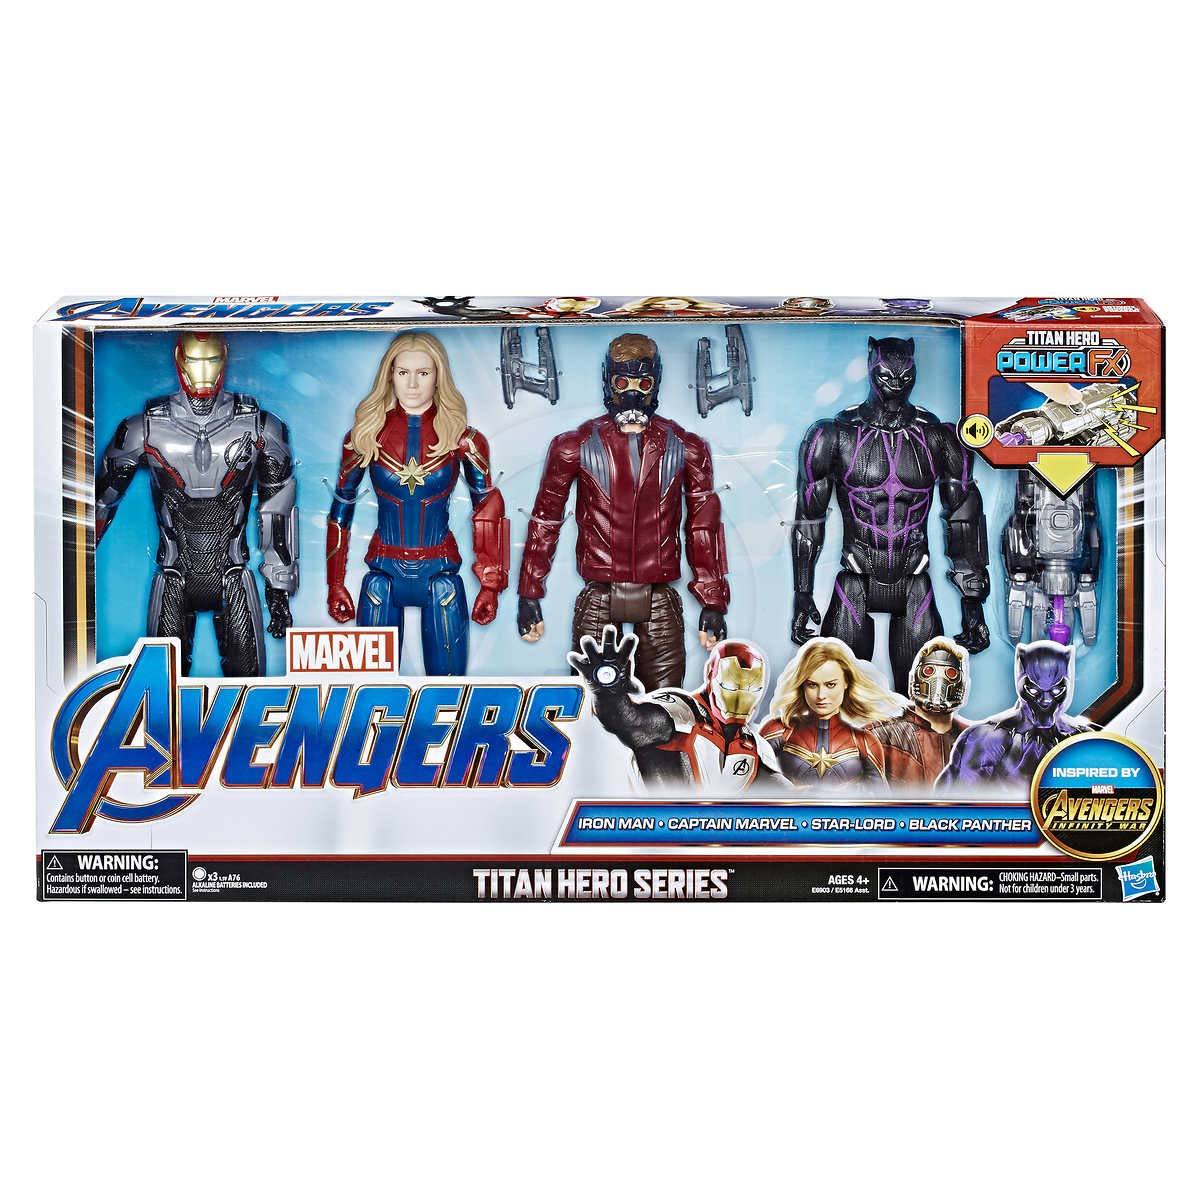 12" (30 cm) Marvel Avengers Titan Hero 4-pack Assortment (4+ Years)